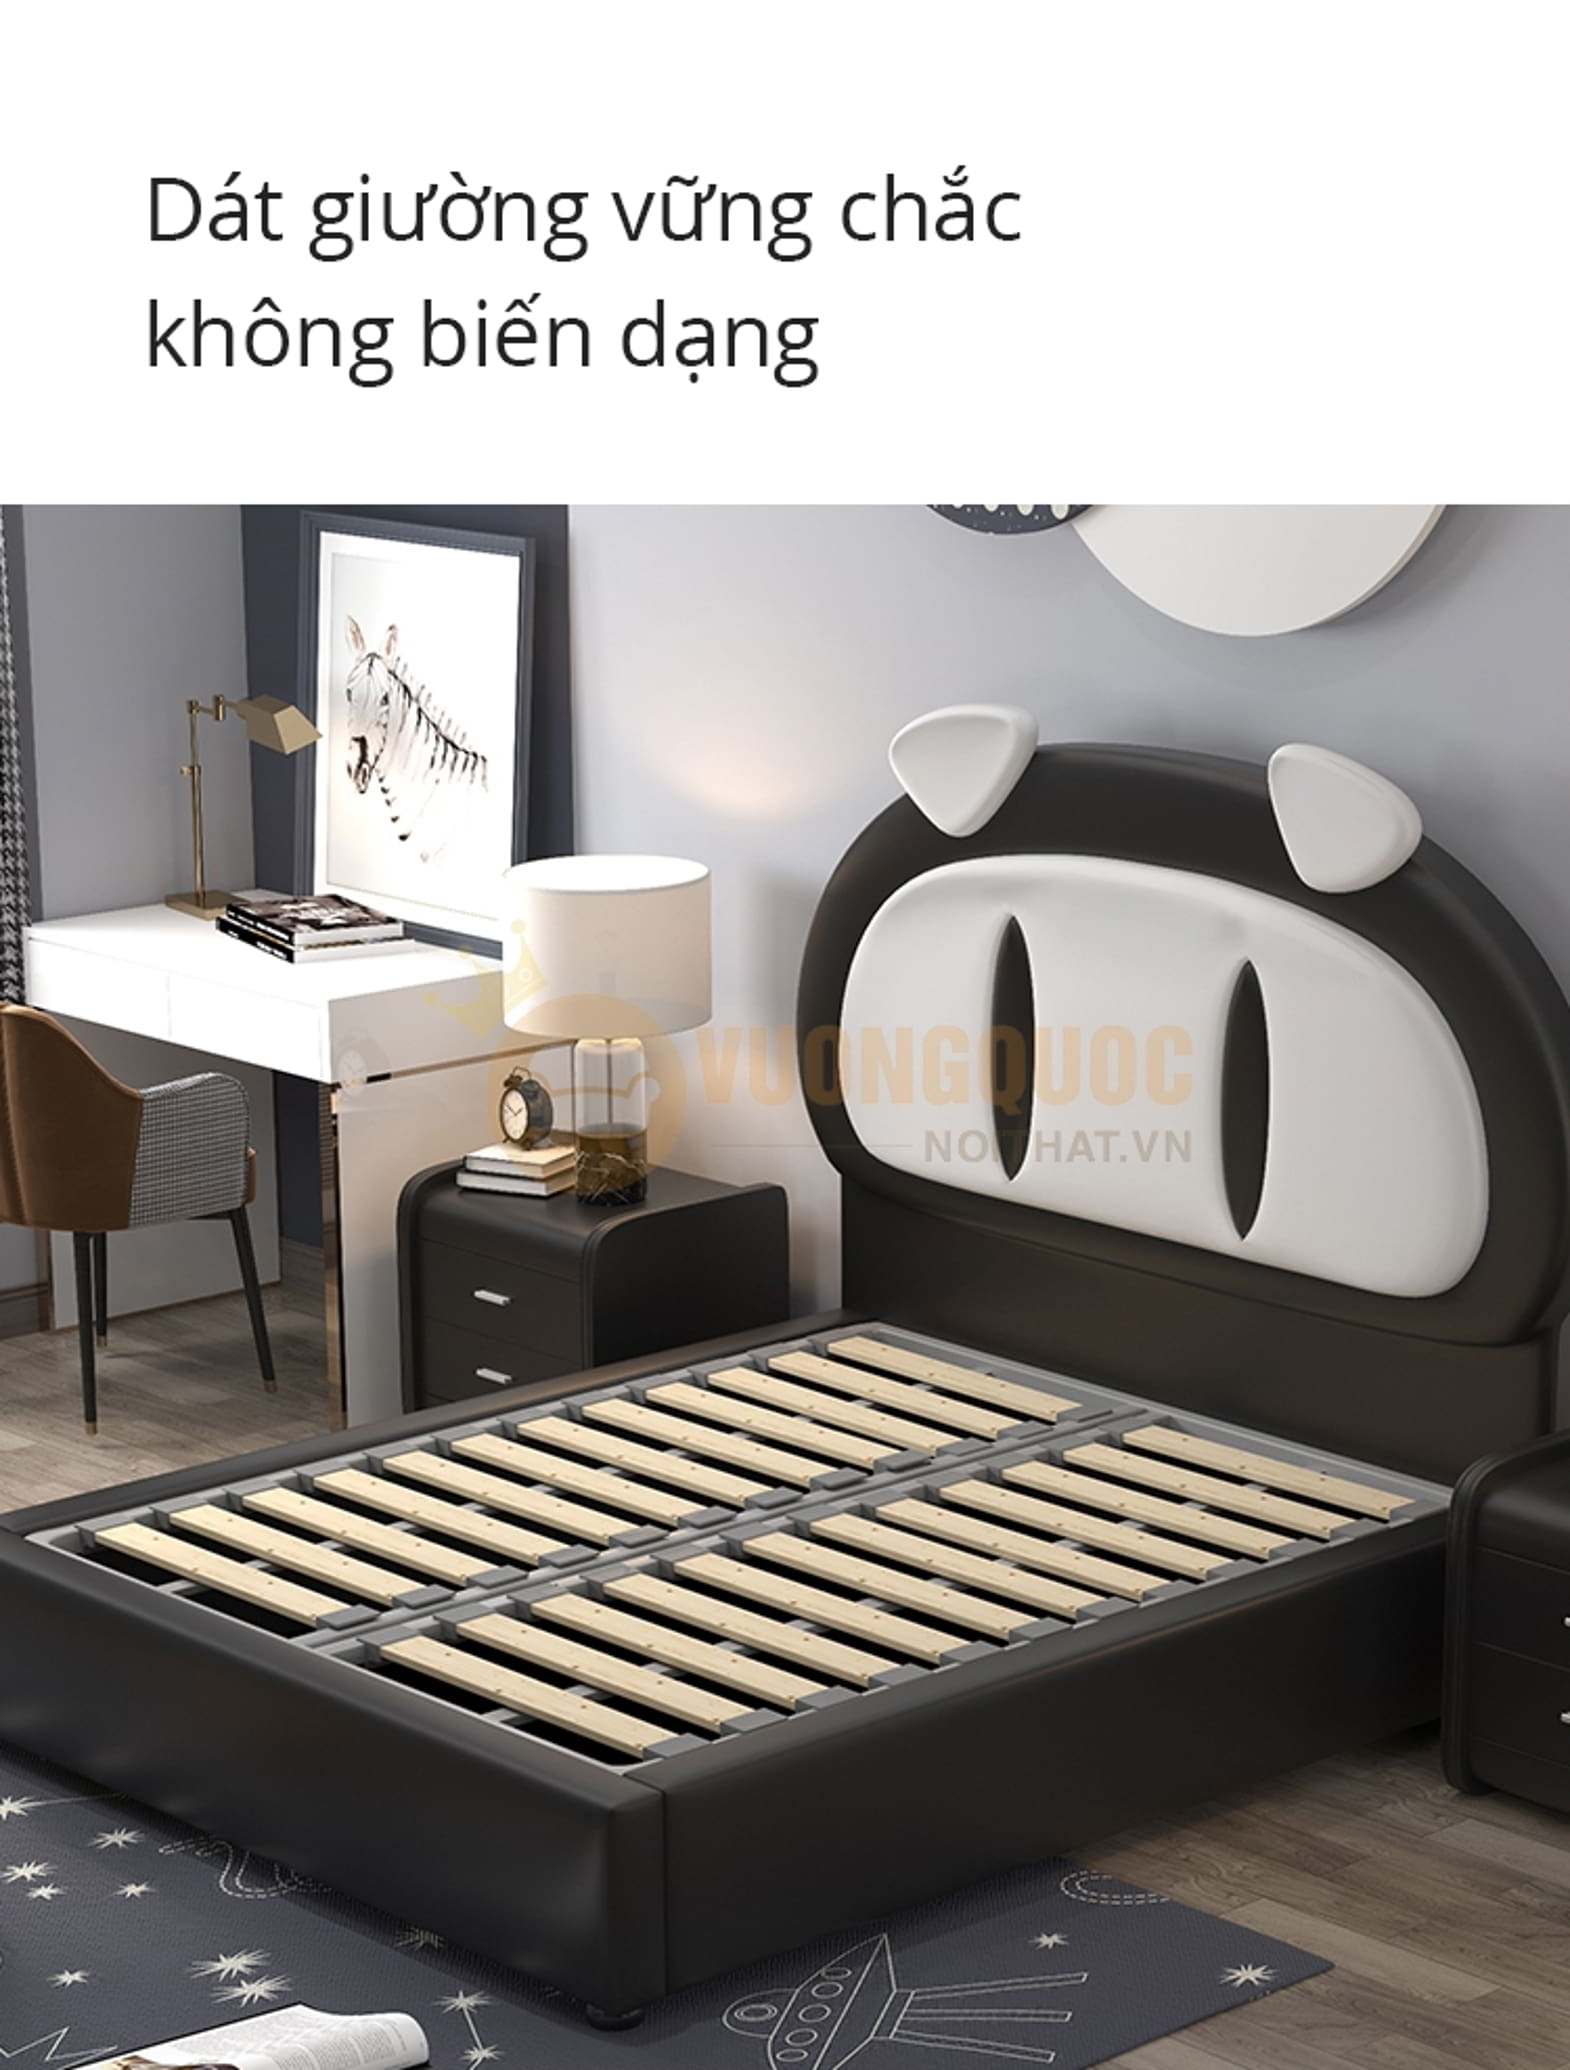 Giường ngủ cho bé thiết kế ngộ nghĩnh FDCB89 dát giường vững chắc